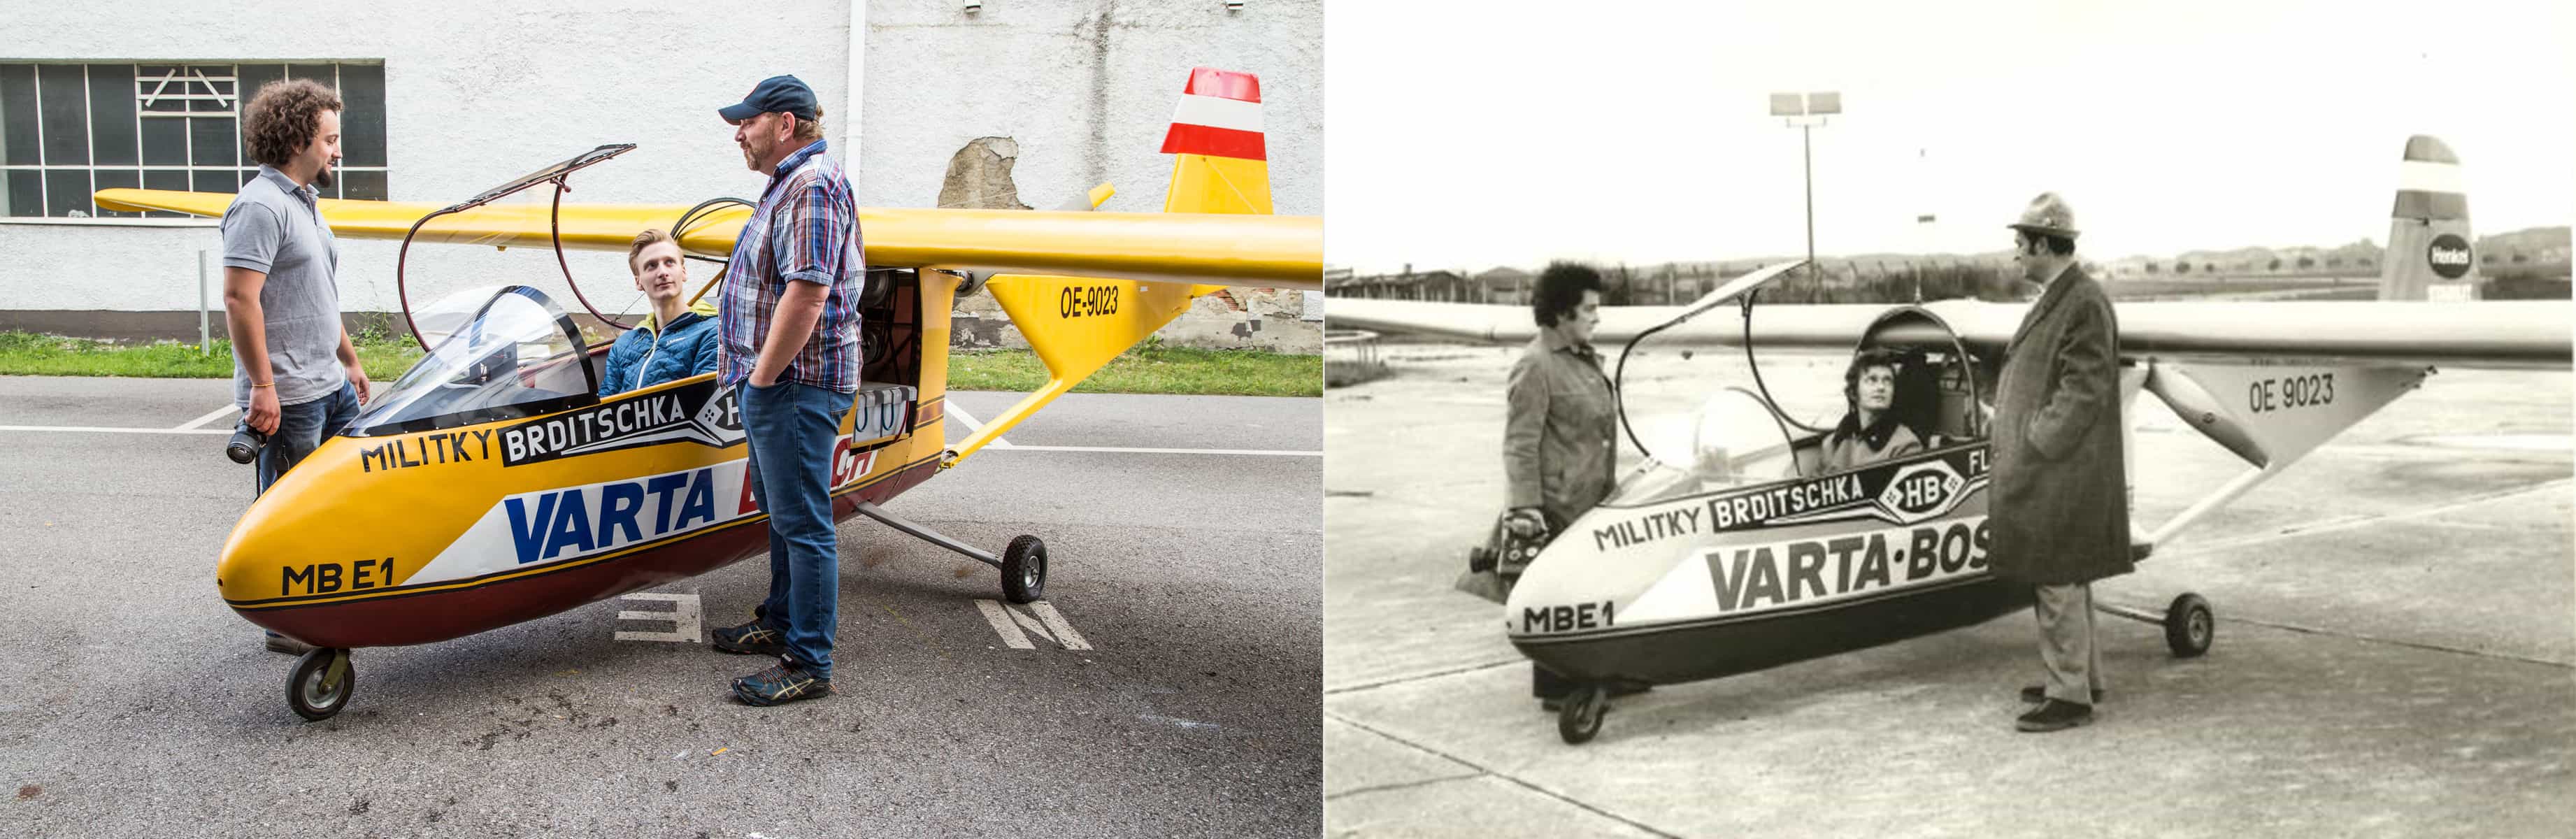 Die Studierenden stellen auf der linken Seite das Foto von 1973 auf der rechten Seite nach, auf dem drei Personen und das Flugzeug abgebildet sind.